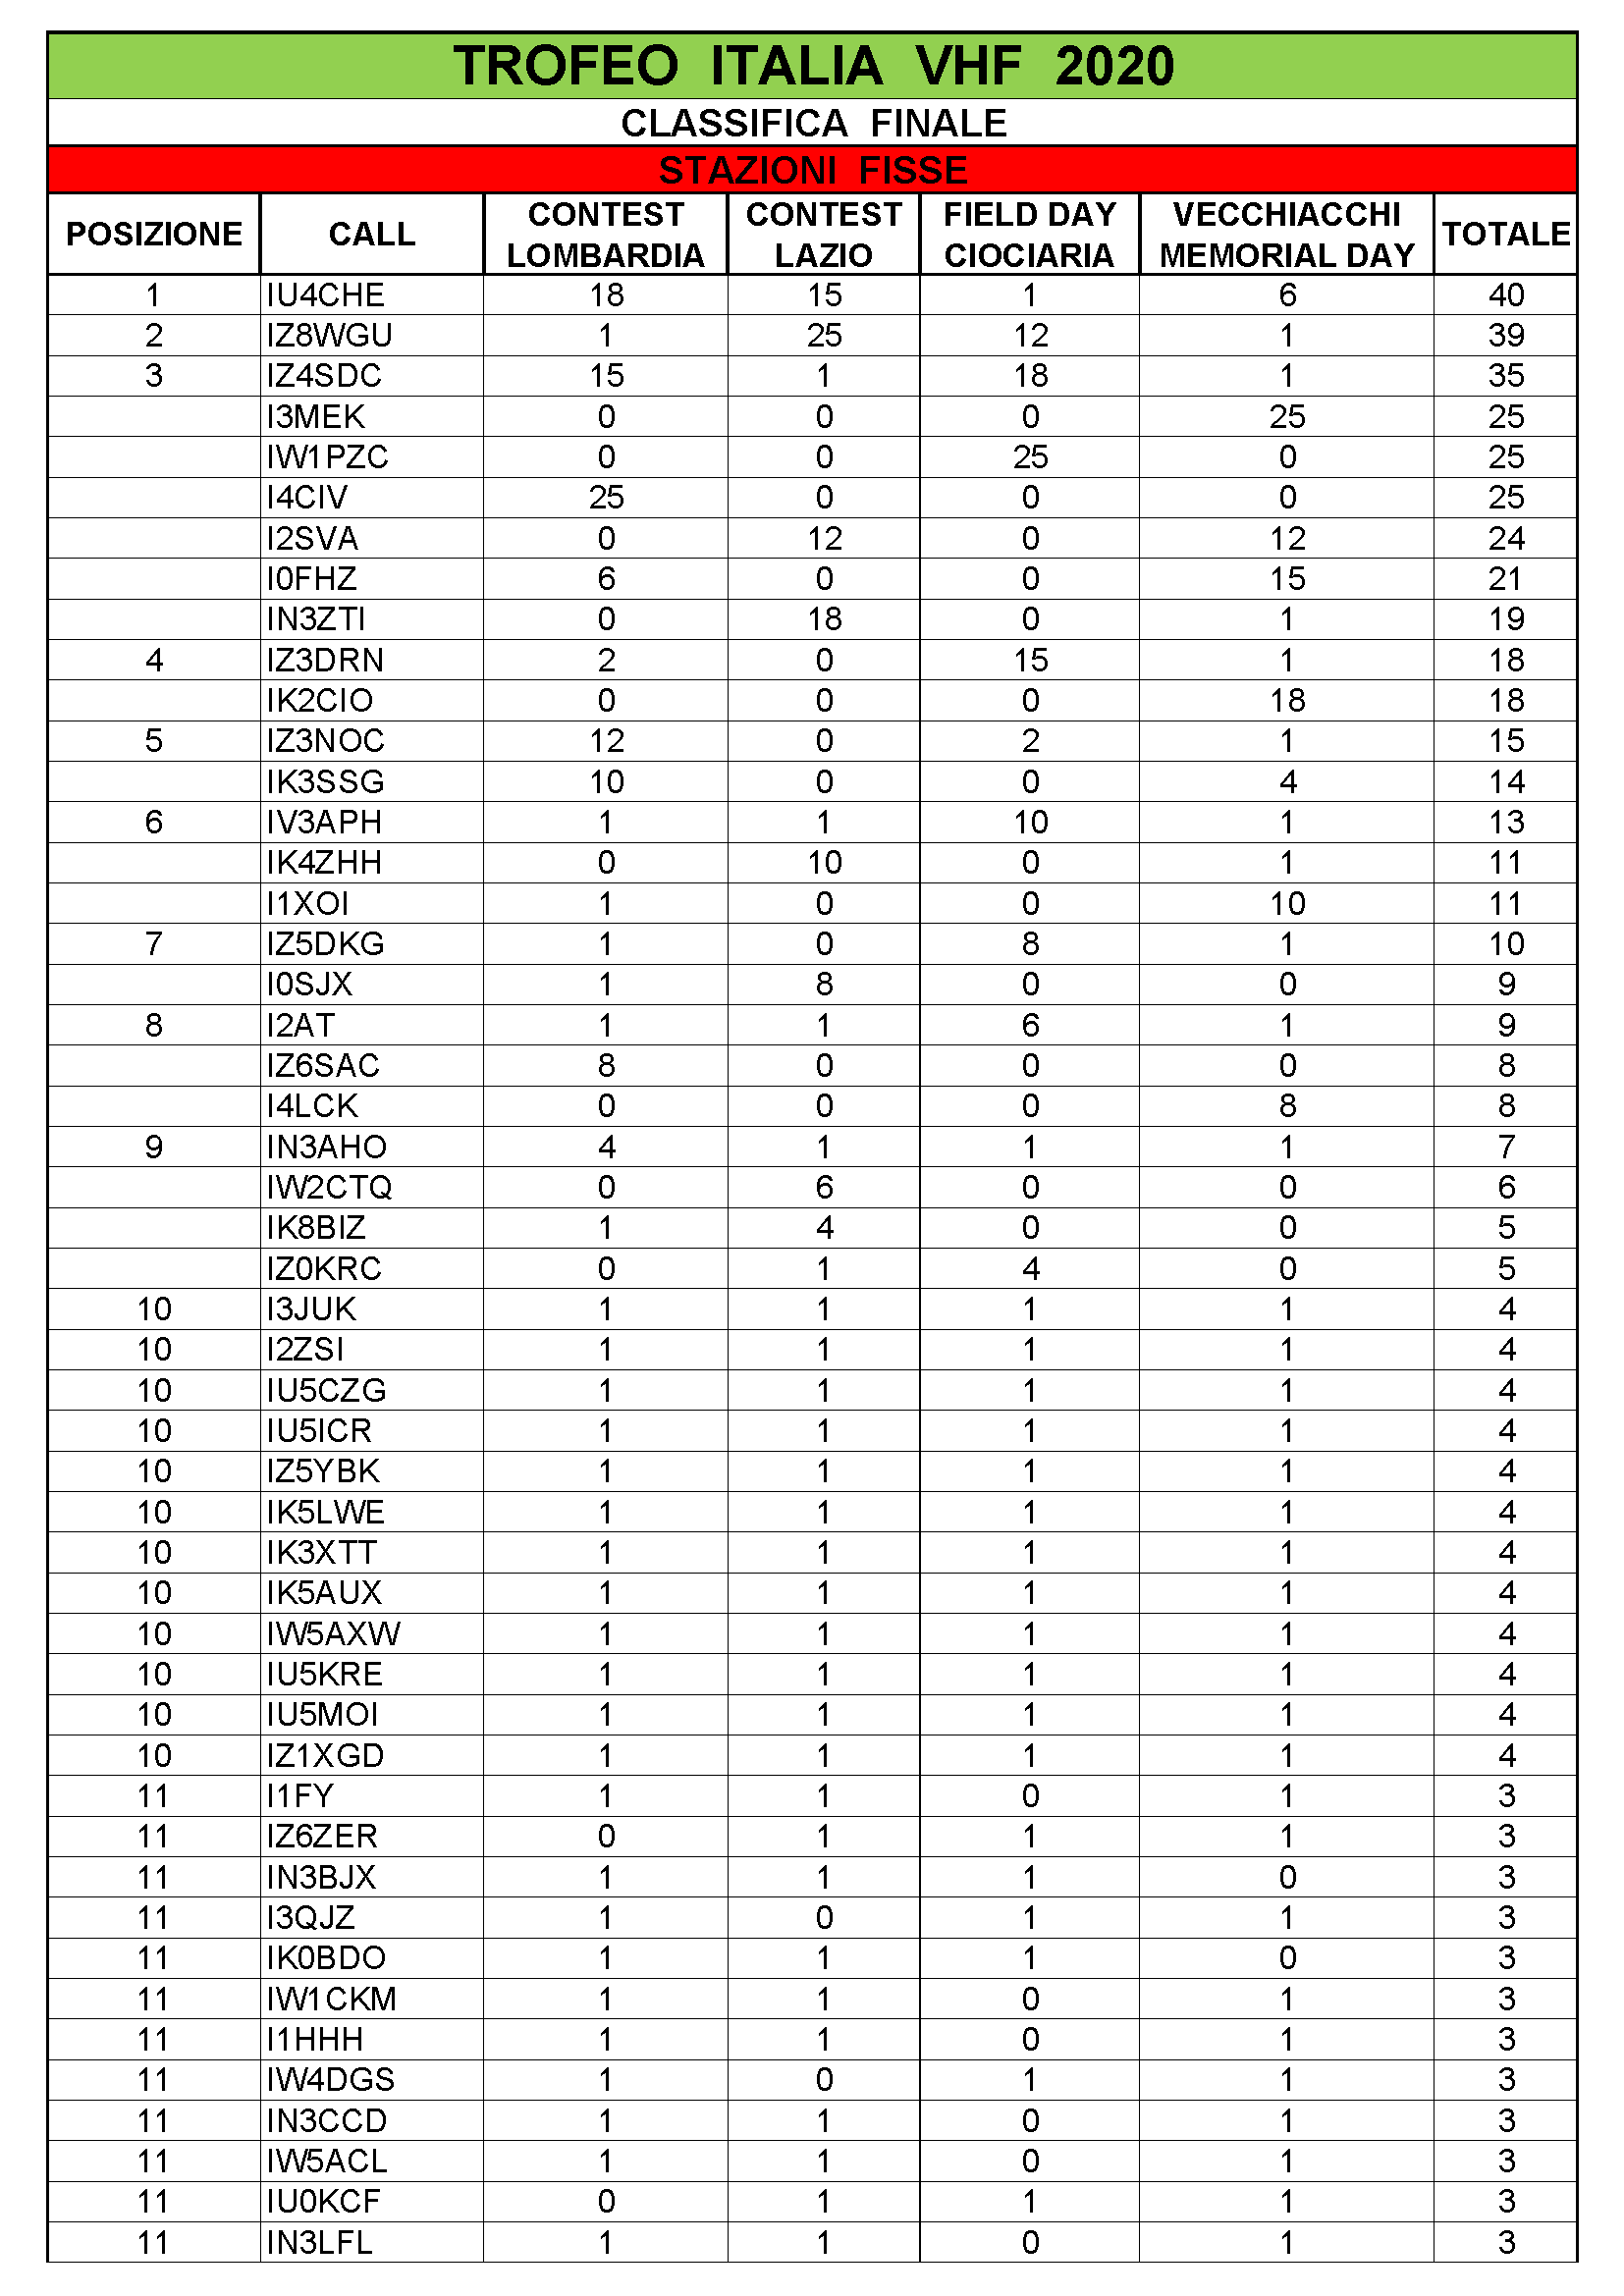 Classifica trofeo Italia vhf 2020 FINALE Pagina 01